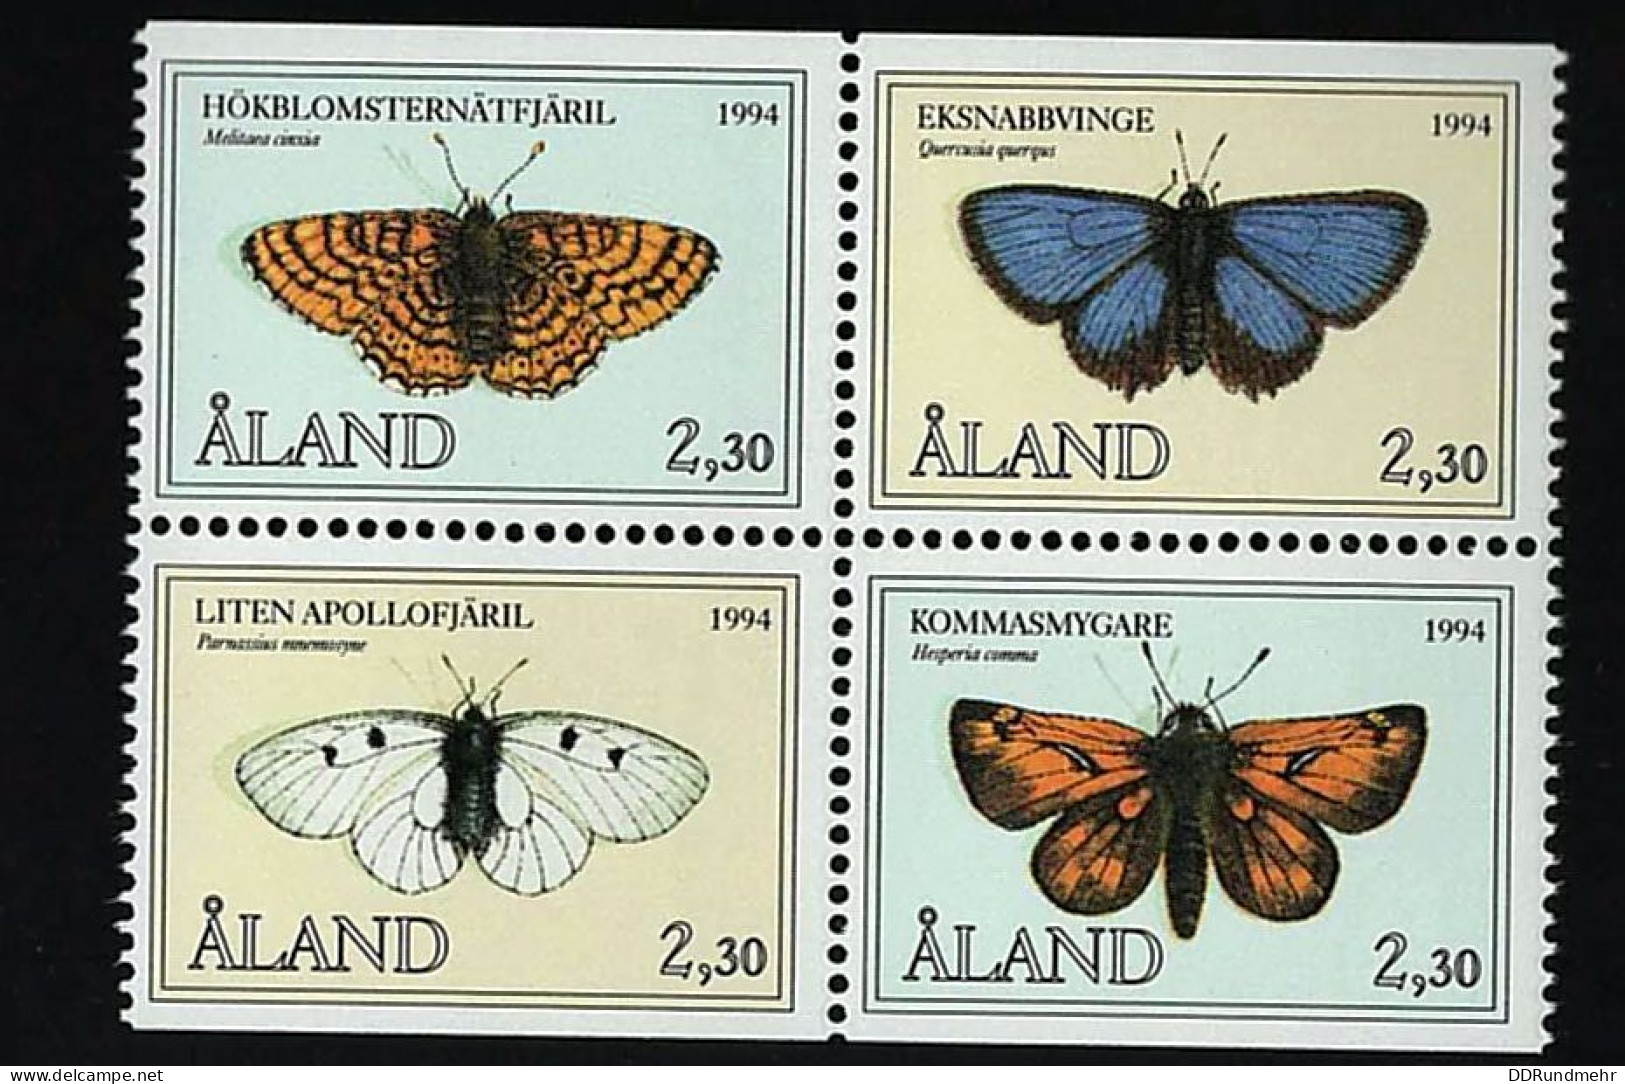 1994 Butterflies Michel AX 82-85 Stamp Number AX 78-81 Yvert Et Tellier AX 82-85 LaPe Finnland AX 82-85 Xx MNH - Ålandinseln